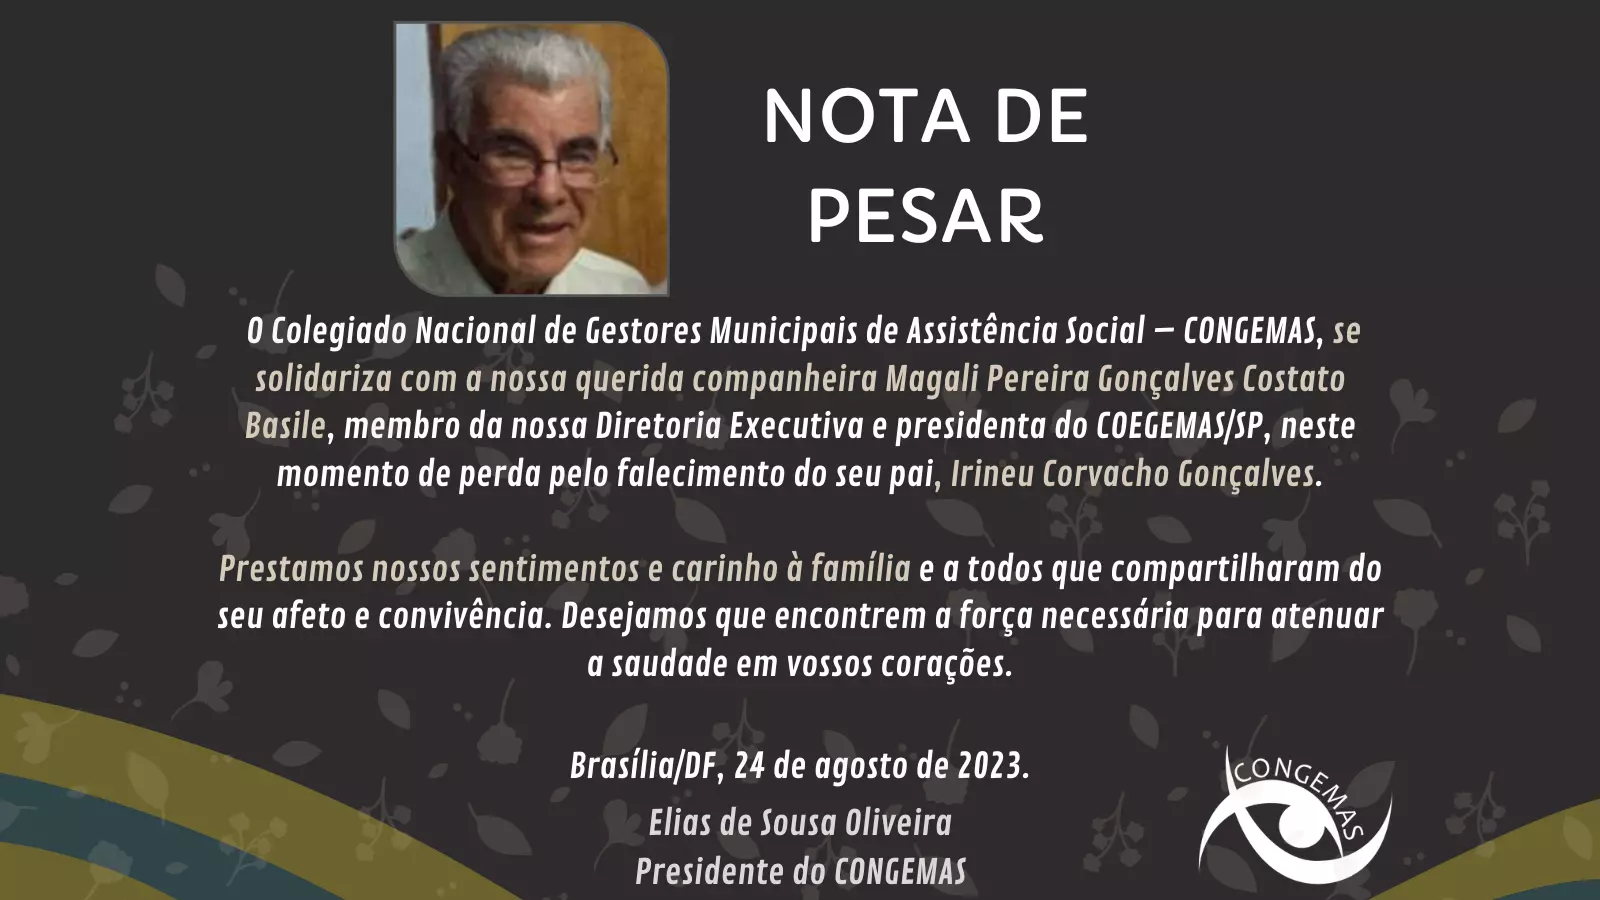 Nota de Pesar - Irineu Corvacho Gonçalves